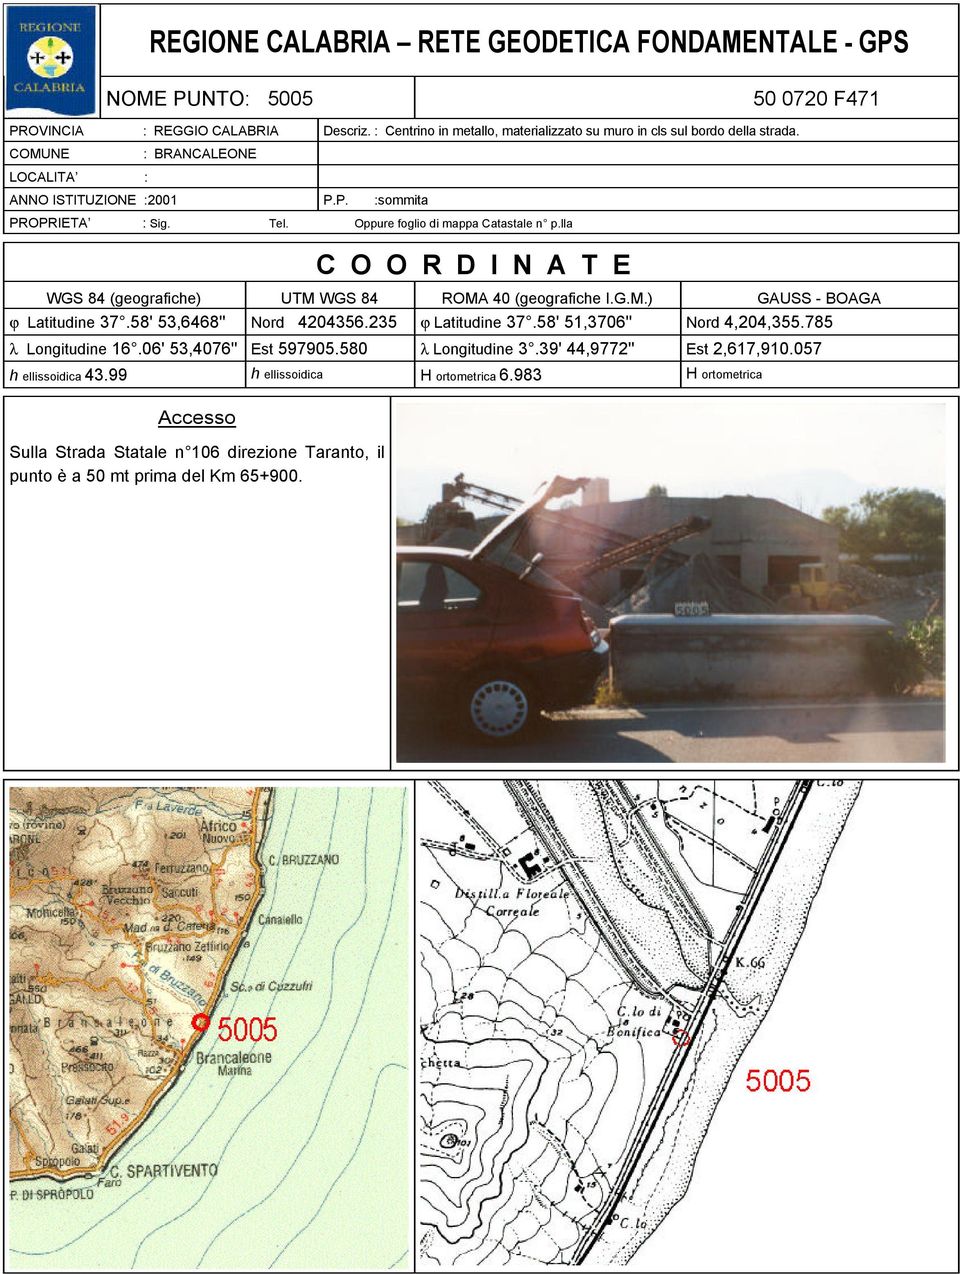 Oppure foglio di mappa Catastale n p.lla COORDINATE WGS 84 (geografiche) UTM WGS 84 ROMA 40 (geografiche I.G.M.) GAUSS - BOAGA ϕ Latitudine 37.58' 53,6468'' Nord 4204356.235 ϕ Latitudine 37.